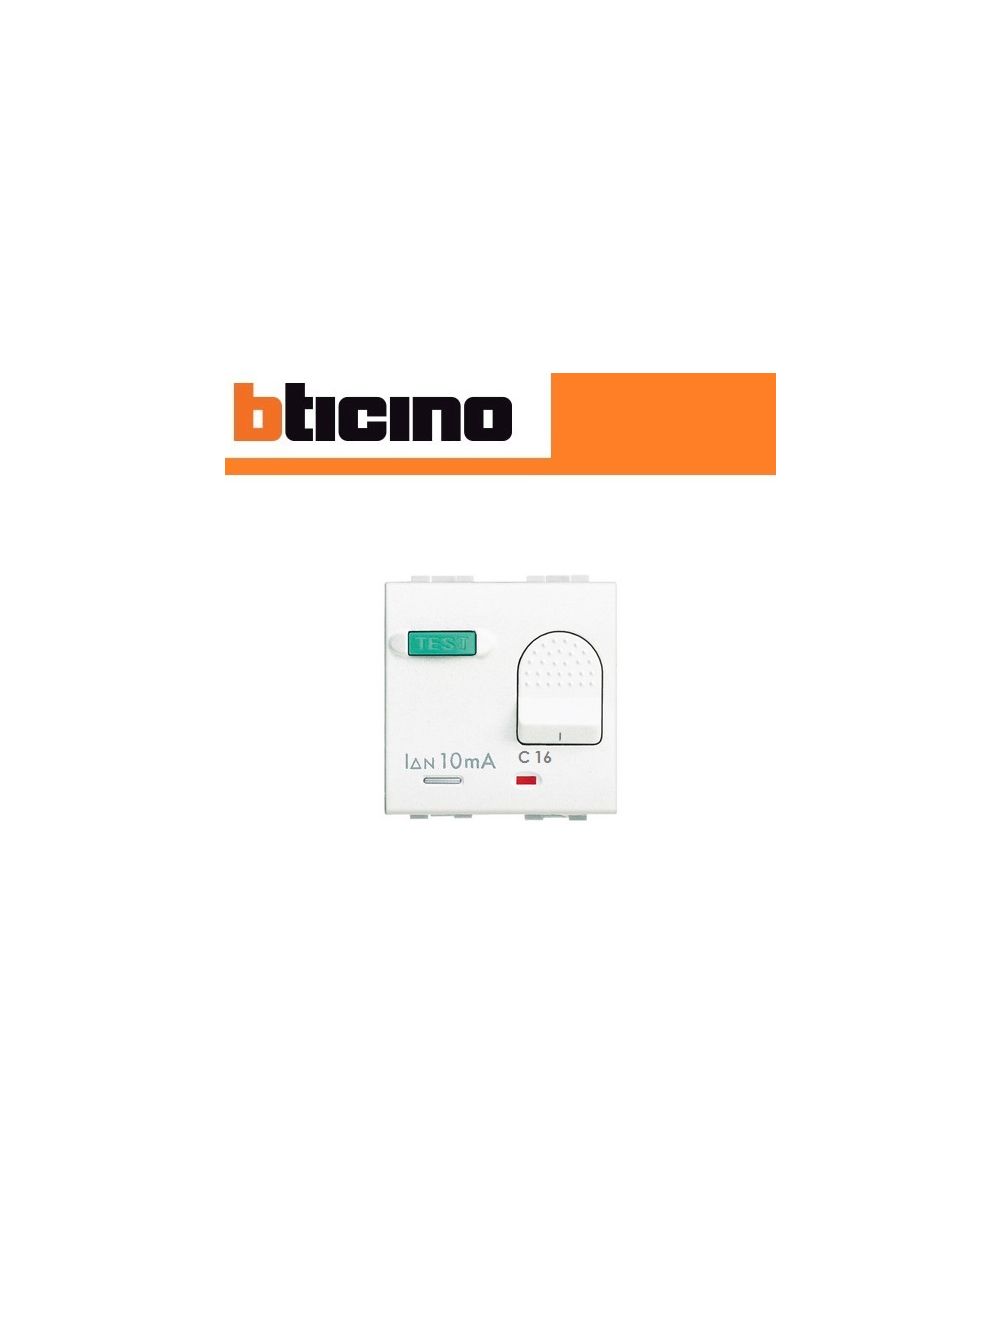 Acquista materiale elettrico e accessori online INTERRUTTORE SALVAVITA 16A  BTICINO LIVING LIGHT N4305/16 BIANCO.